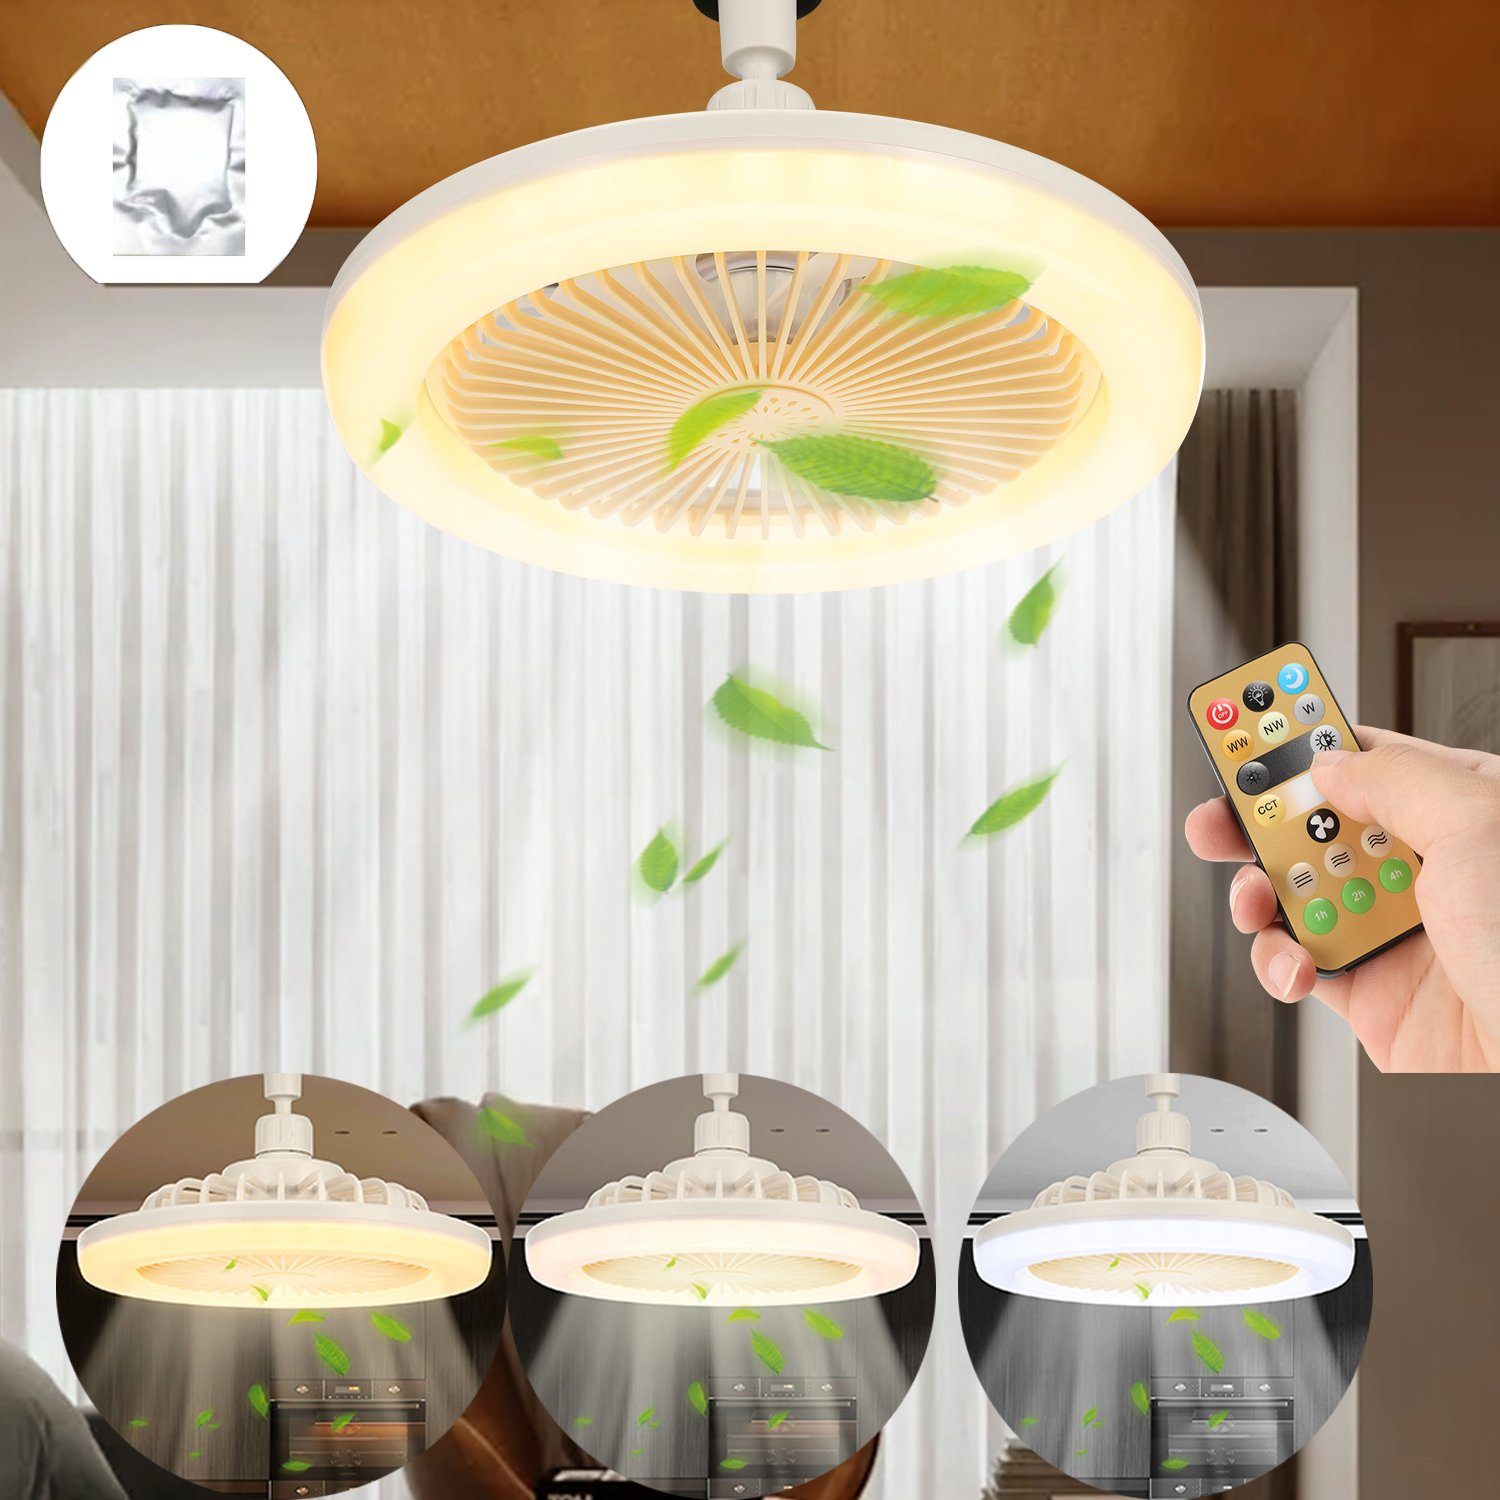 oyajia Deckenventilator 30W LED Deckenleuchte mit E27 Ventilator, 3-stufiger Windstärke, Dimmbar mit Fernbedienung, für Kinderzimmer Küche Garage Lagerraum